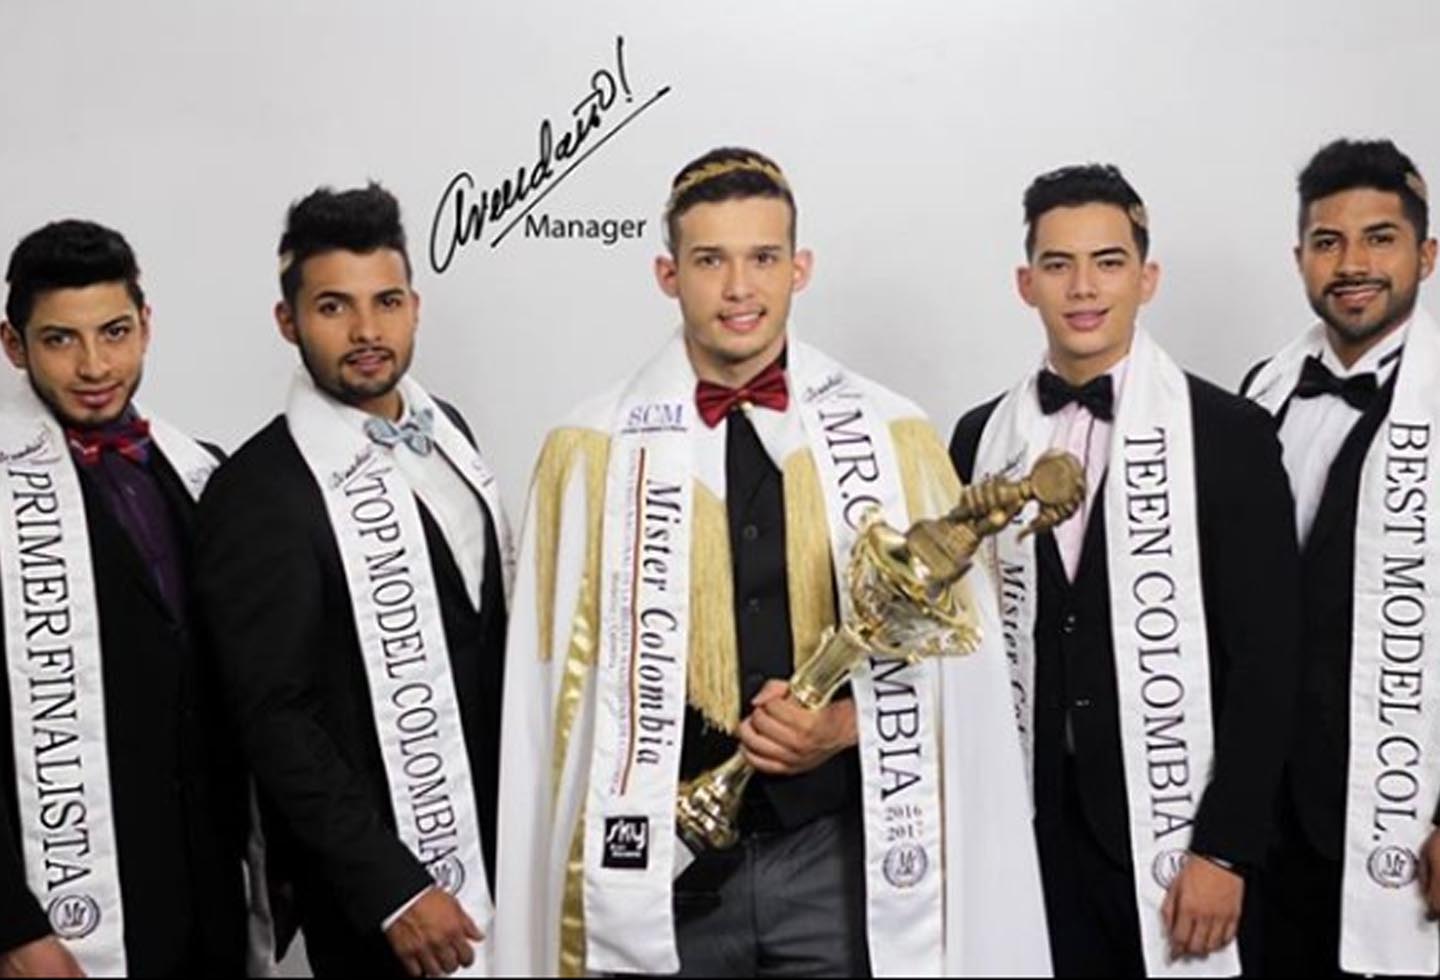 Conozca a los participantes que este año disputan el título de Mister Colombia